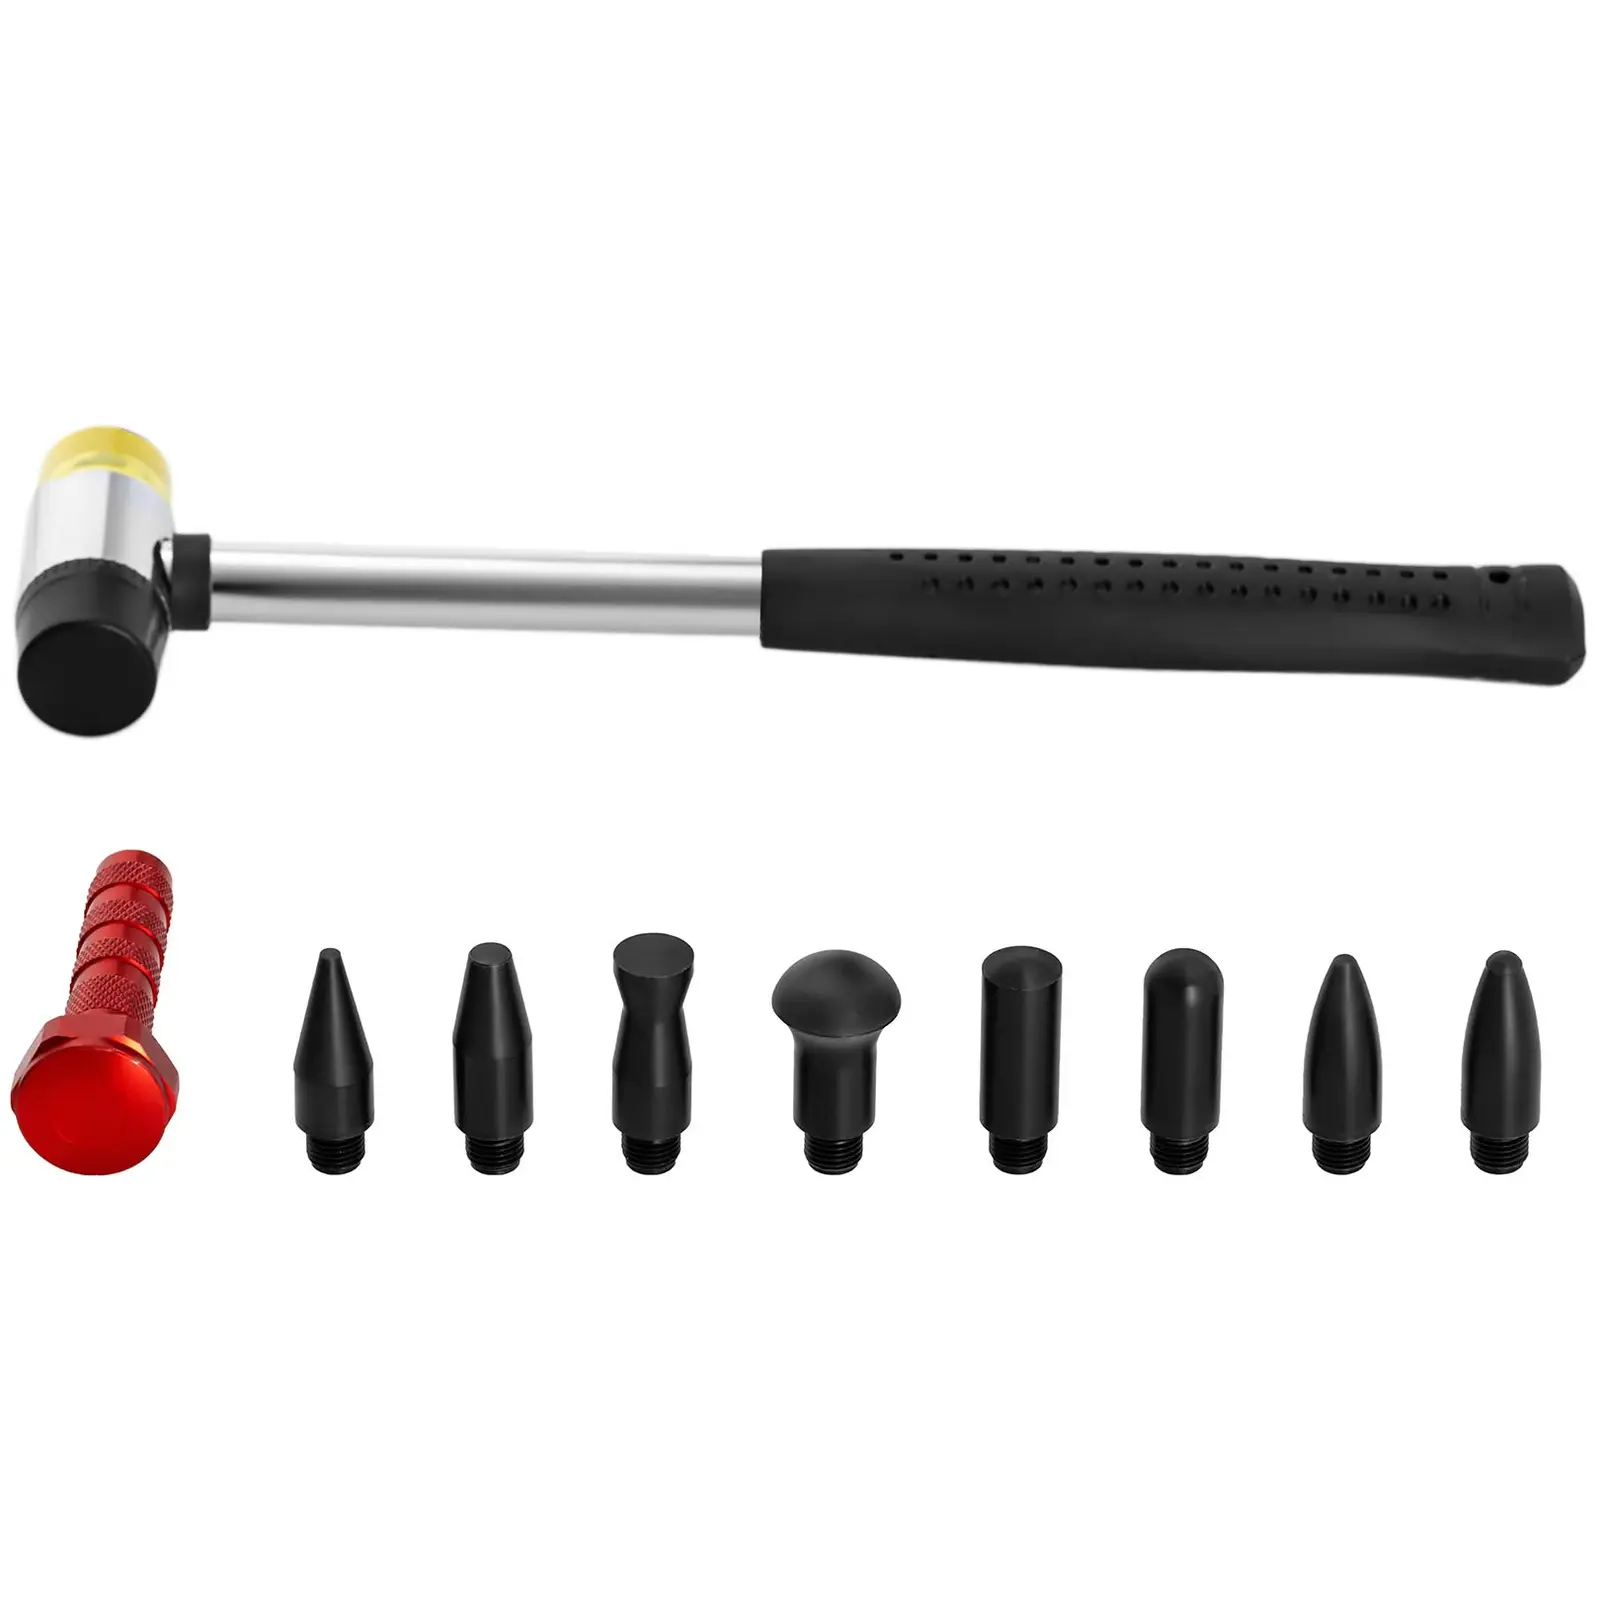 Kit de herramientas para reparar abolladuras - 25 piezas